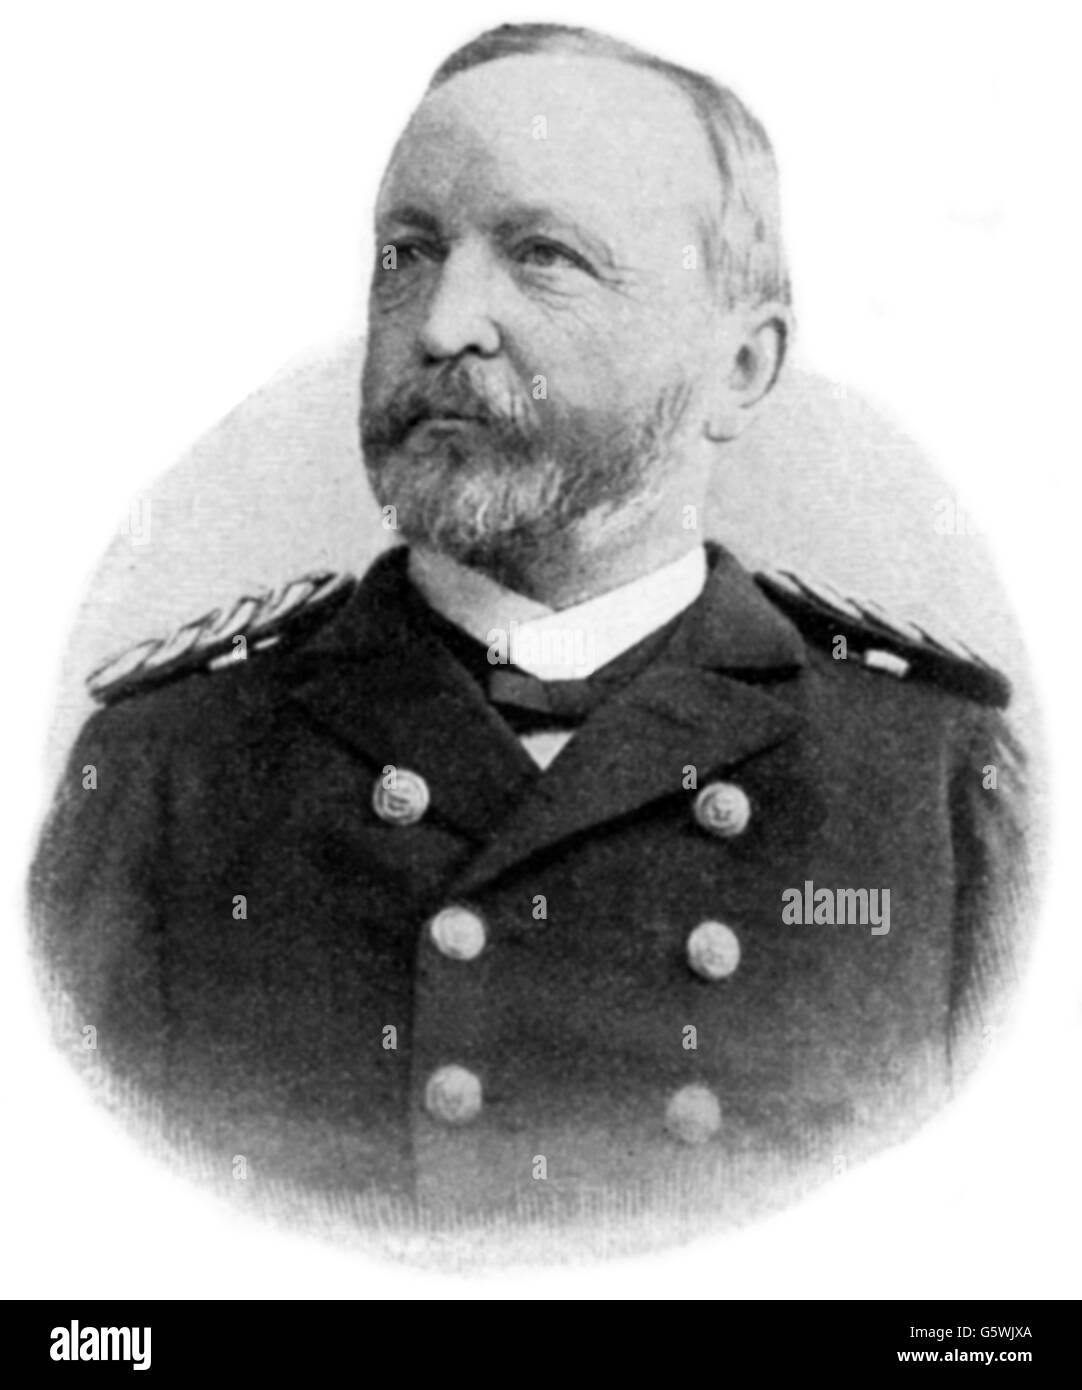 Holllmann, Friedrich von, 19.1.1842 - 21.1.1913, amiral allemand, secrétaire permanent du Bureau naval impérial 1890 - 1897, portrait, gravure en bois, vers 1895, Banque D'Images